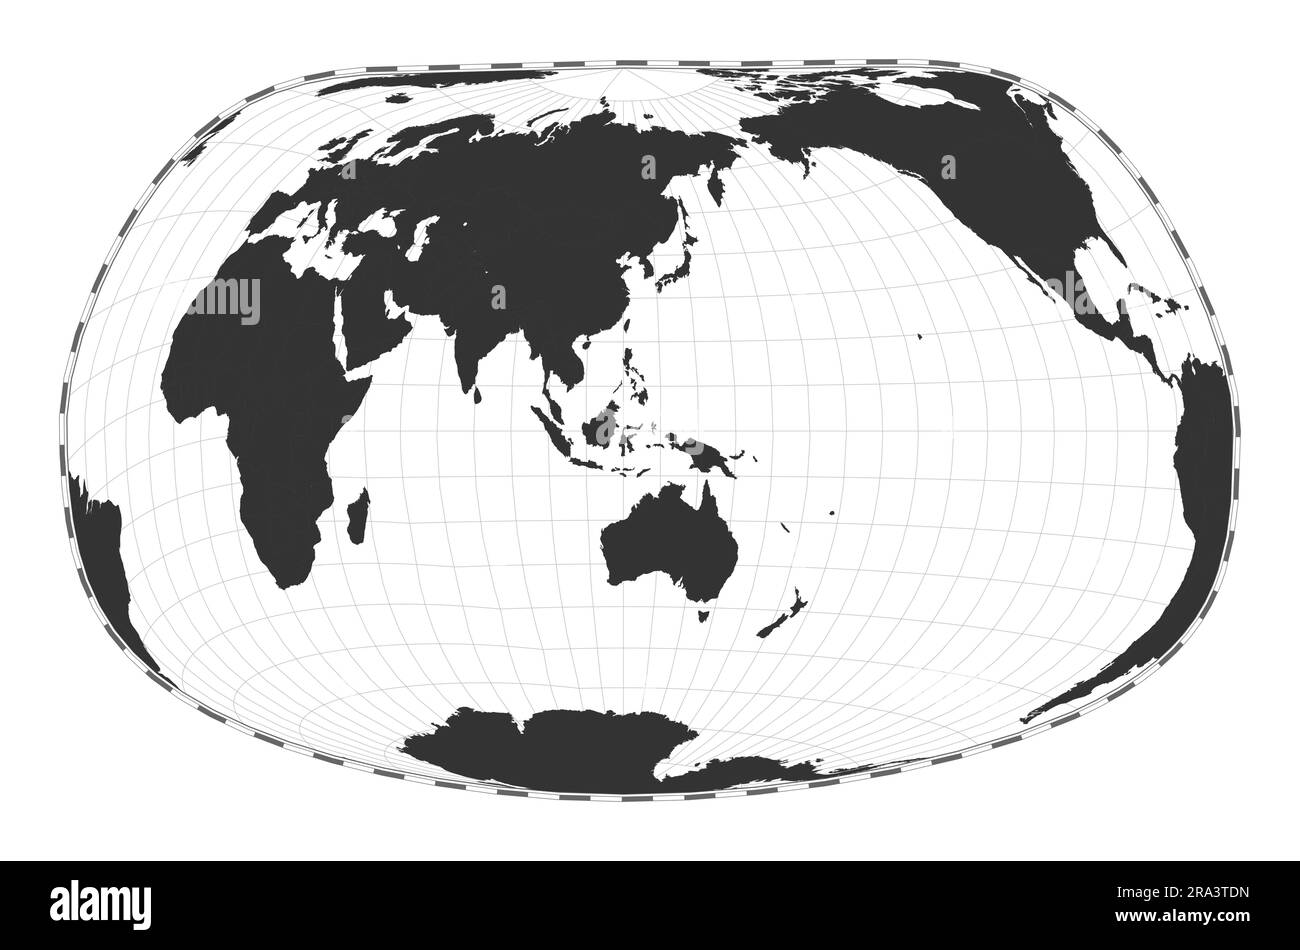 Vector-Weltkarte. Jacques Bertins Projektion 1953. Geografische Karte mit Breiten- und Längengraden. Zentriert auf 120deg W Längengrad. Ve Stock Vektor